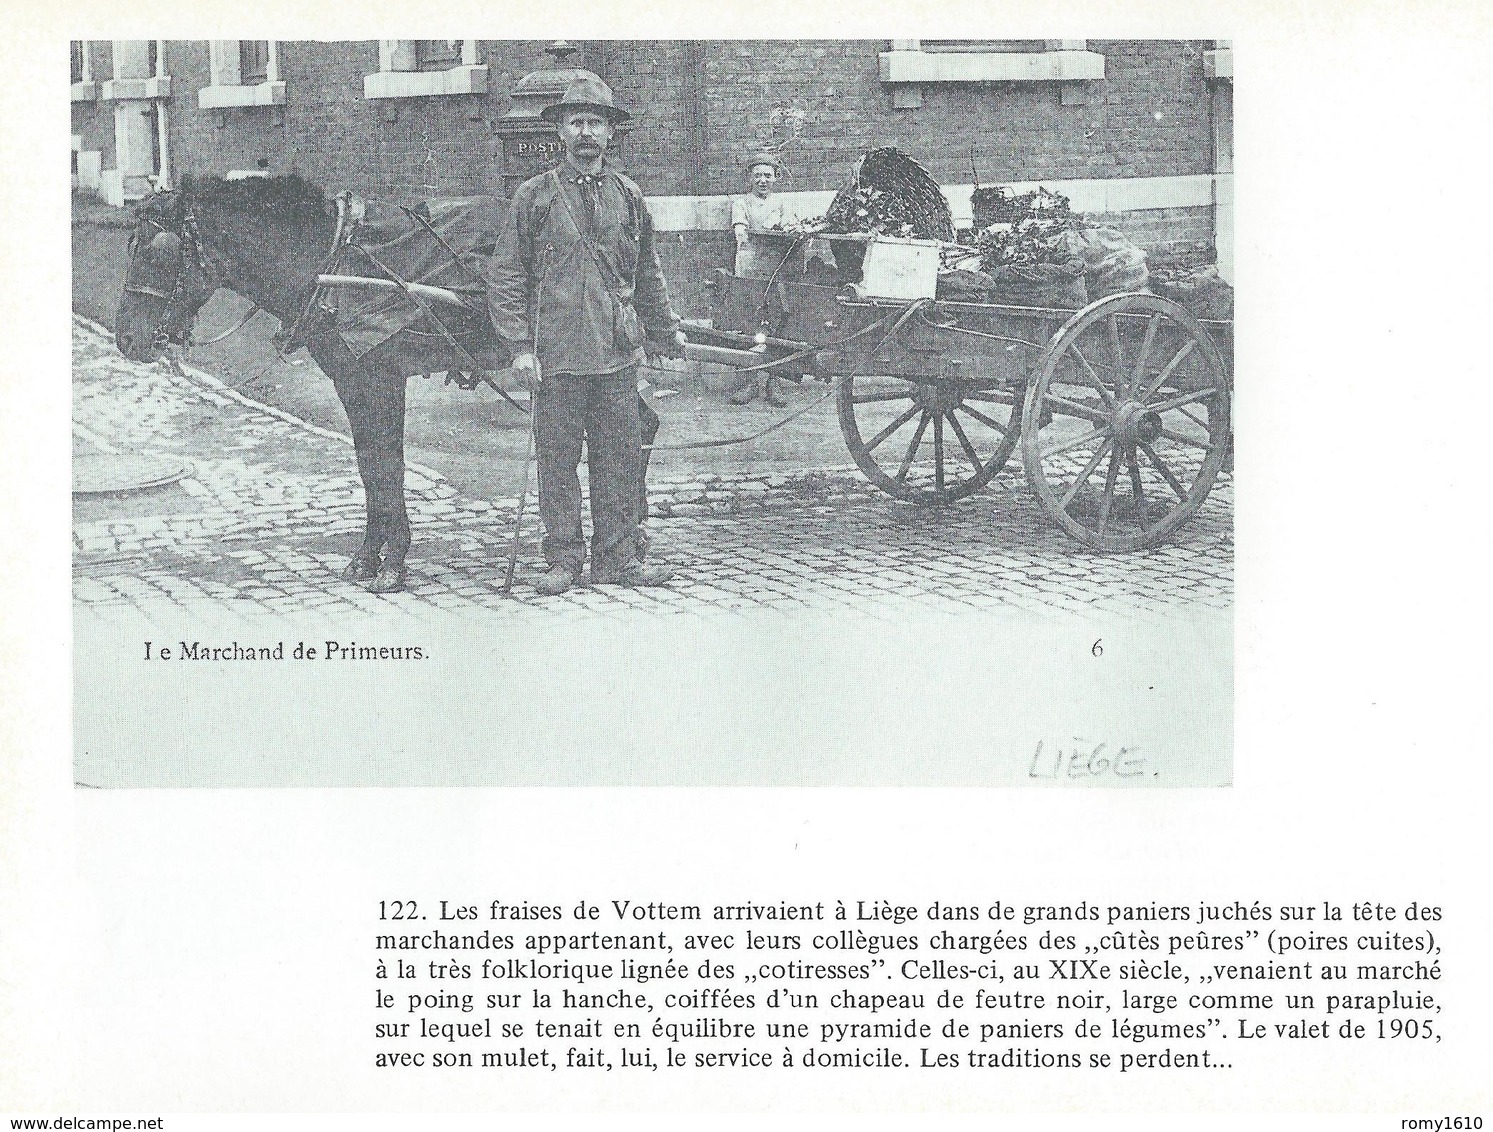 Liège - Outremeuse - Faubourgs. En cartes postales anciennes. Signé et daté par l'Auteur Jacques Dubreucq. 8 scans.